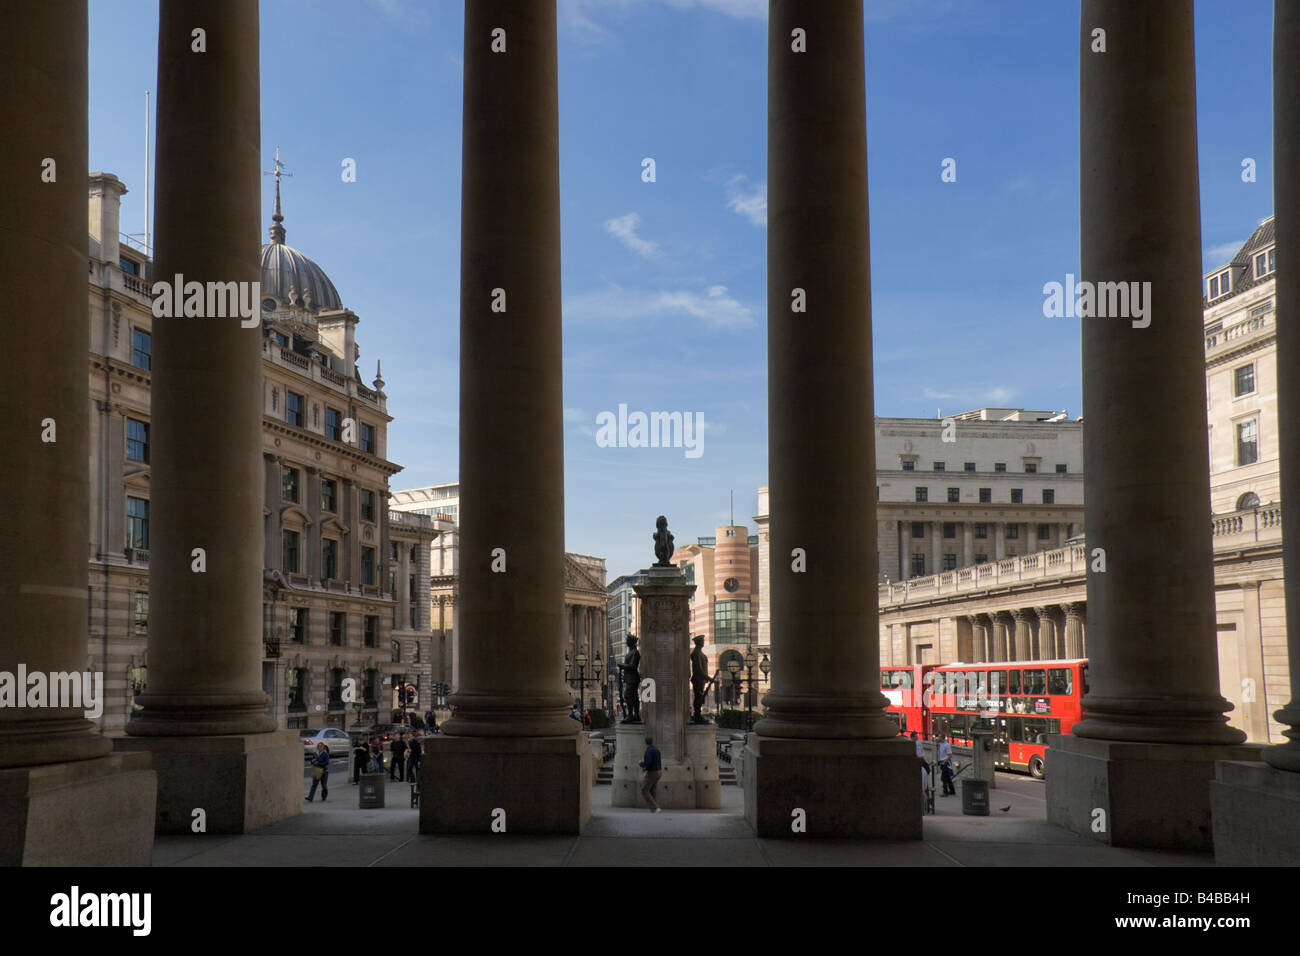 Eine Ansicht der Bank in der City of London von der Royal Exchange auf der rechten Seite ist die Bank of England Stockfoto